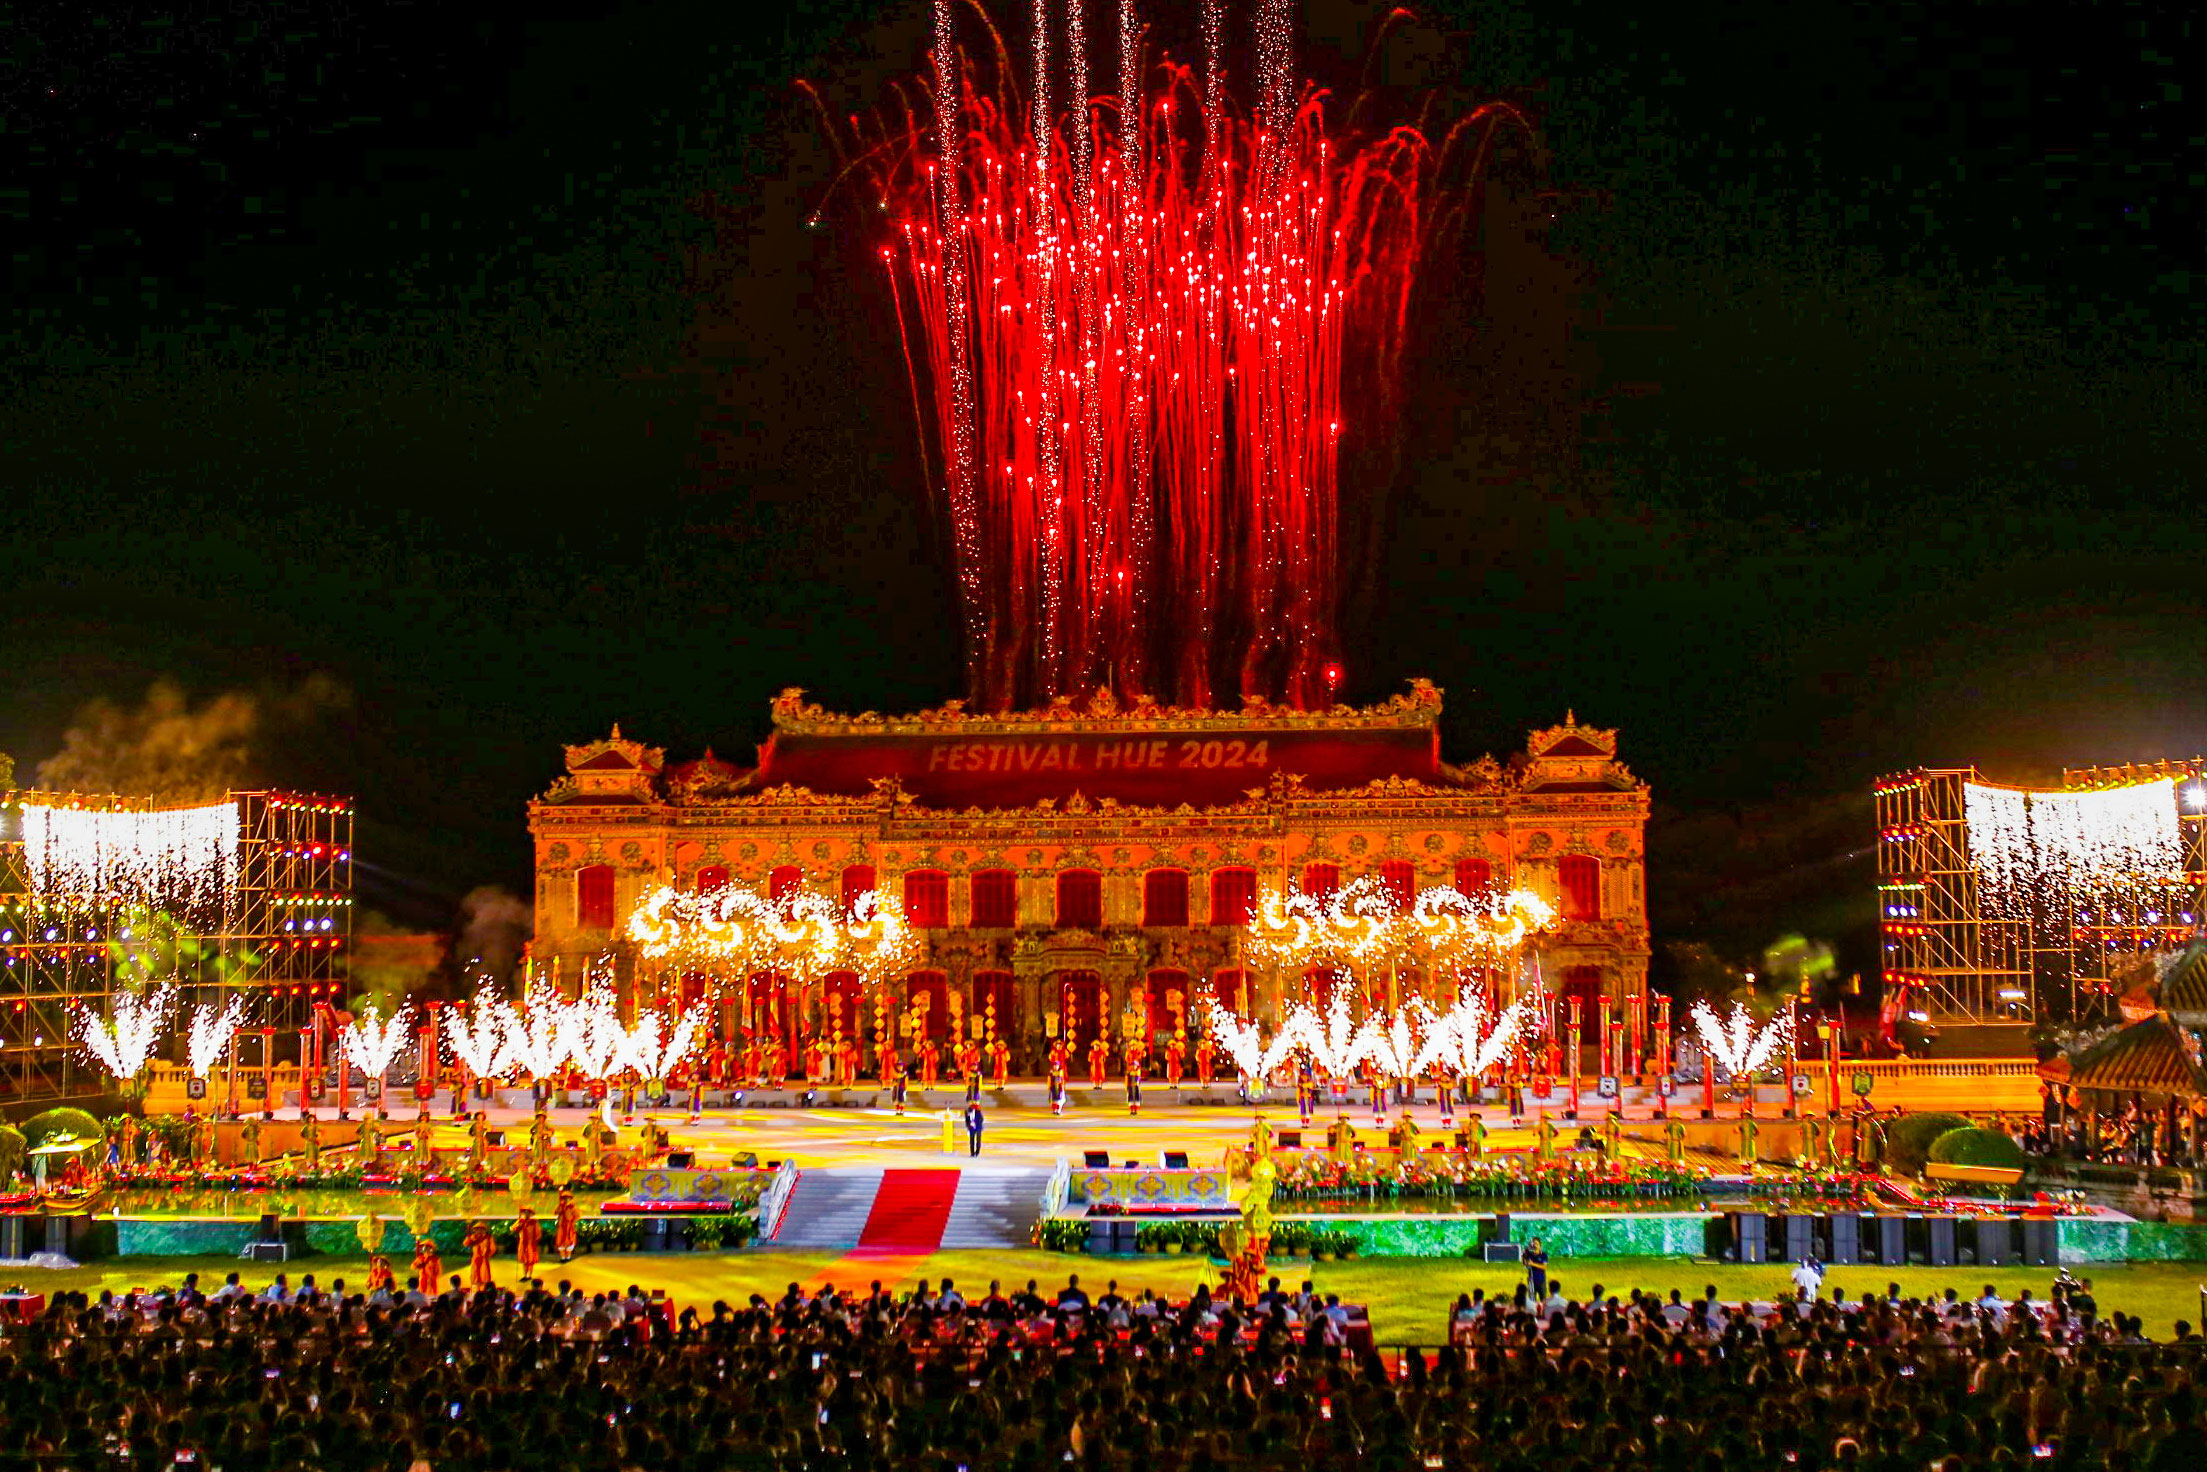 Sau một tuần tưng bừng lễ hội, lễ bế mạc Tuần lễ Festival Nghệ thuật quốc tế 2024 với chủ đề “Di sản văn hóa, hội nhập và phát triển” đã diễn ra tối 12/6 tại sân khấu điện Kiến Trung- bên trong Hoàng cung Huế.